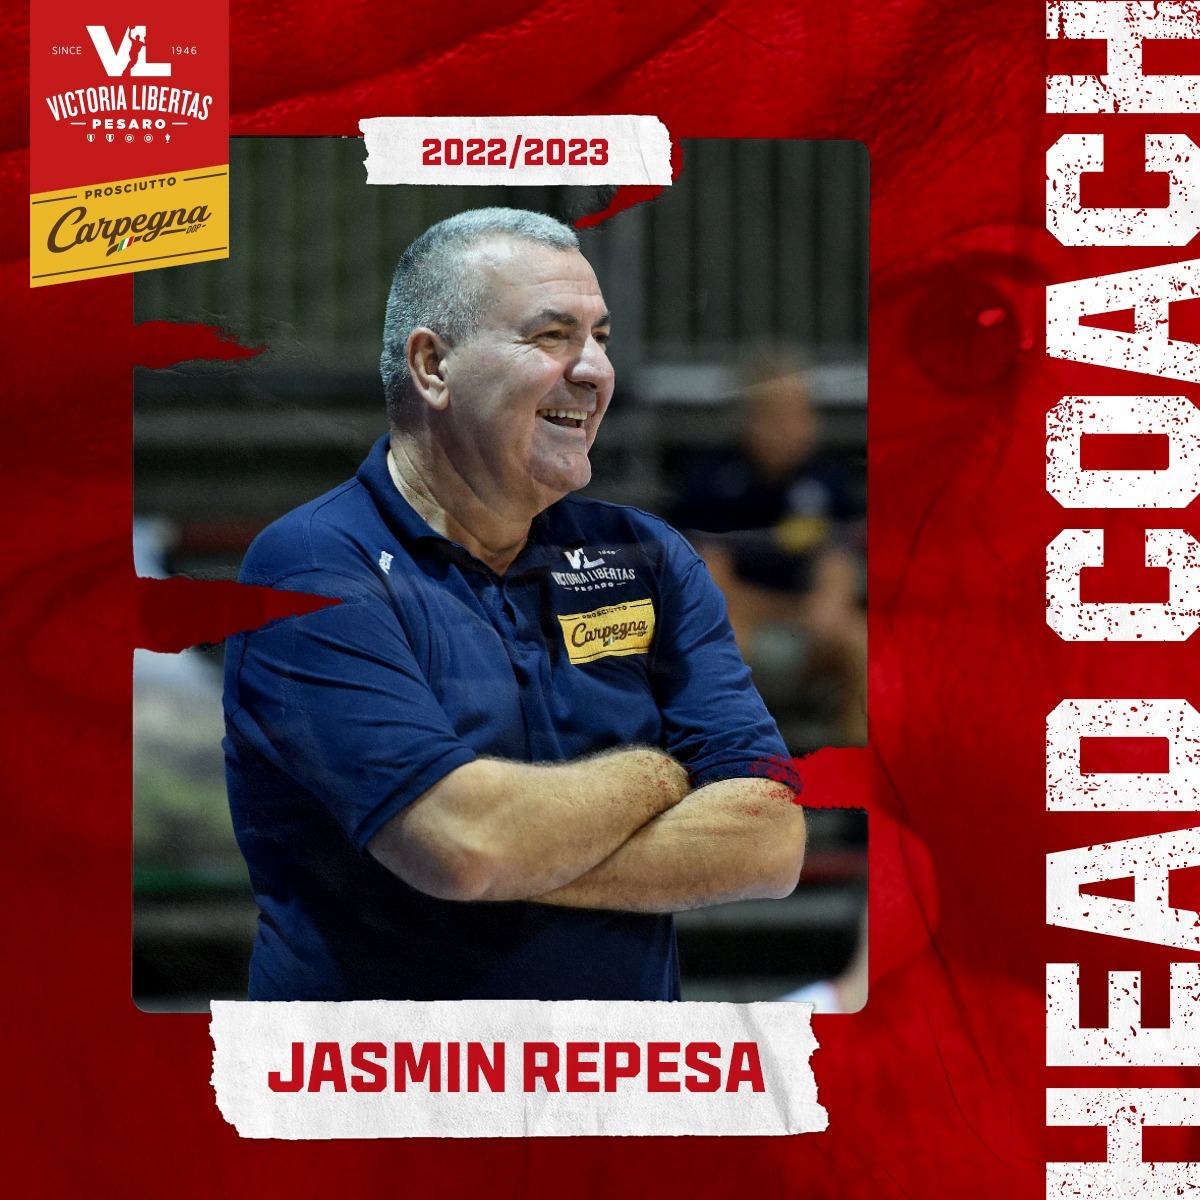 Jasmin Repesa è il nuovo allenatore della Vuelle